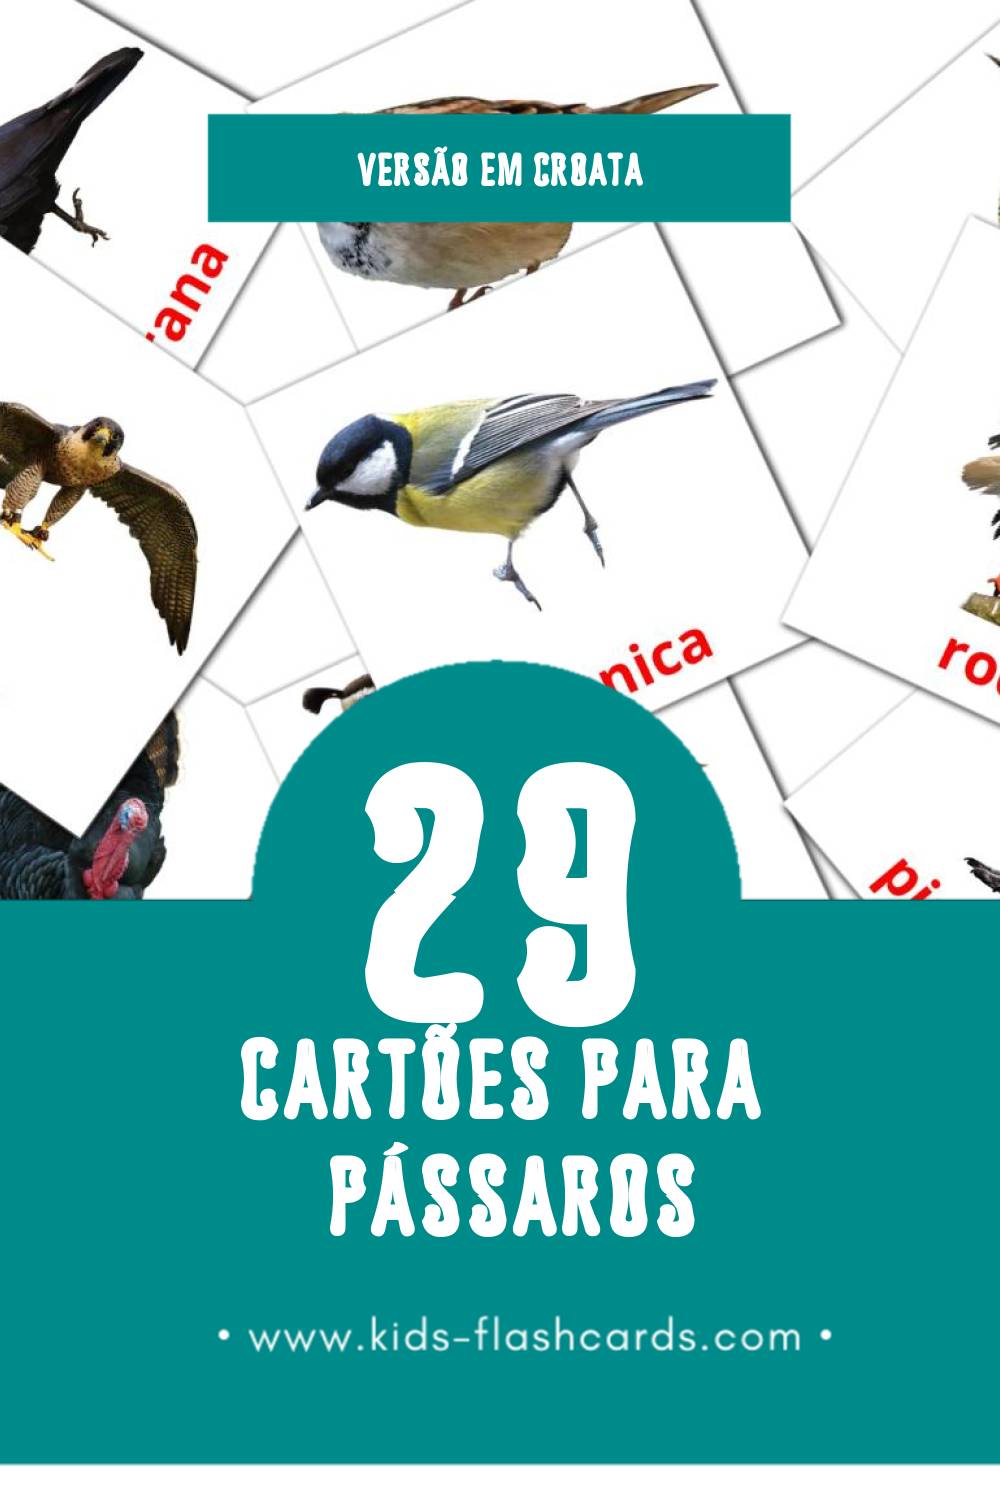 Flashcards de ptice Visuais para Toddlers (29 cartões em Croata)